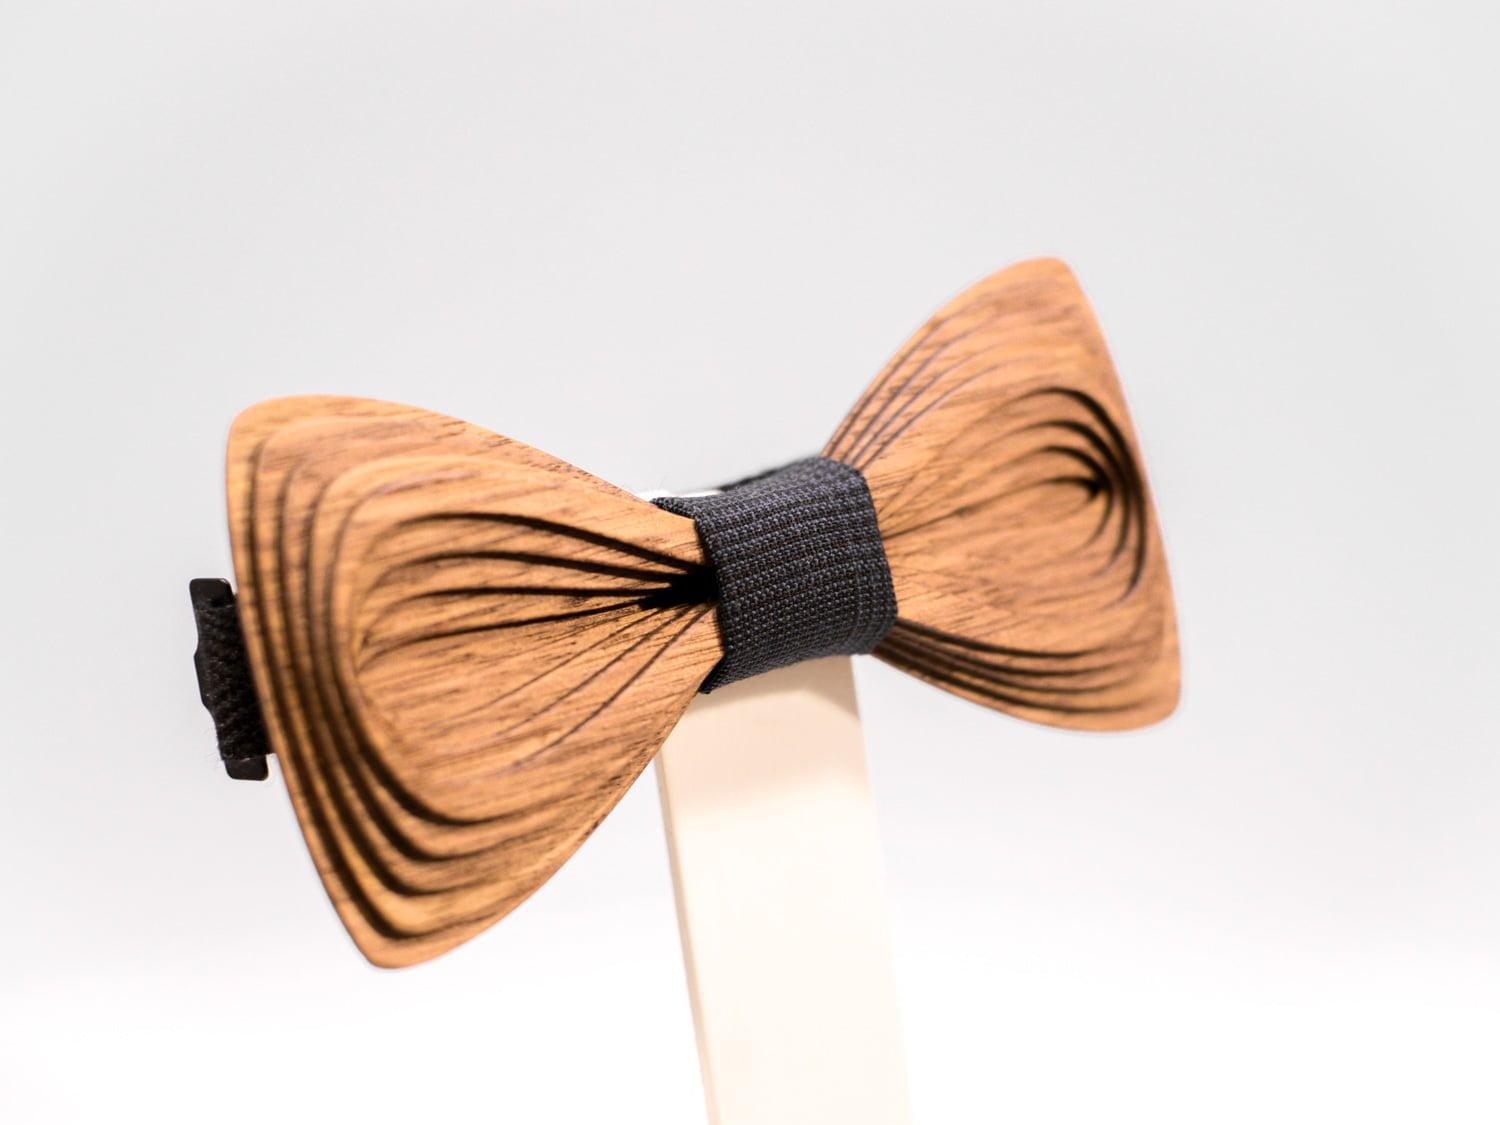 SÖÖR Antero neckwear in walnut wood from FSC certified forest. A wooden bowtie by Hermandia.